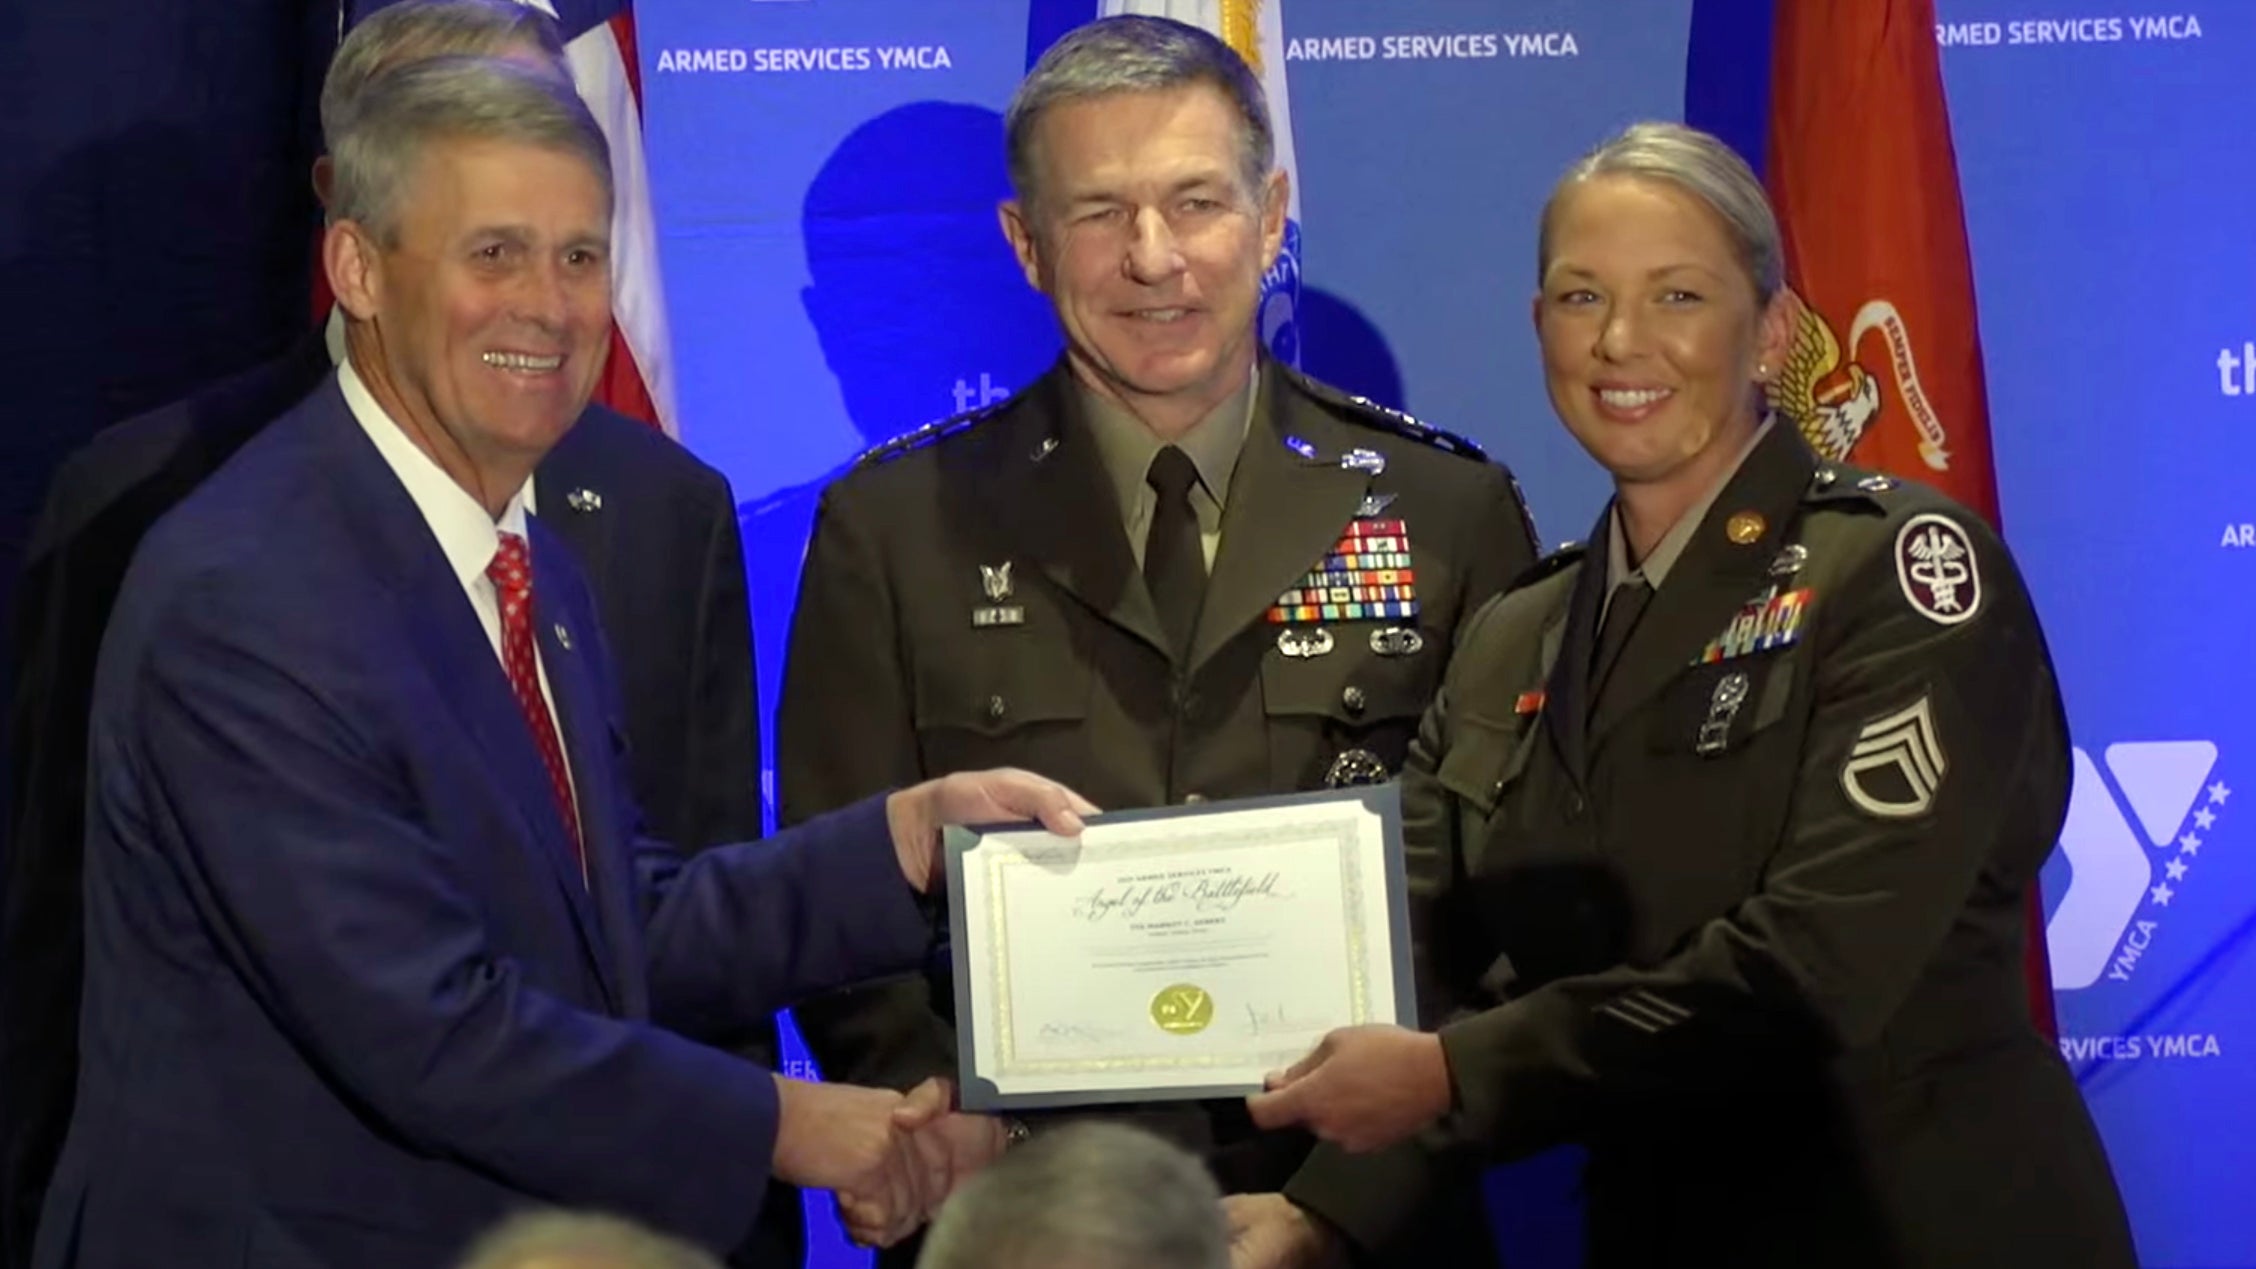 Staff Sgt. Margot Gebers receives award